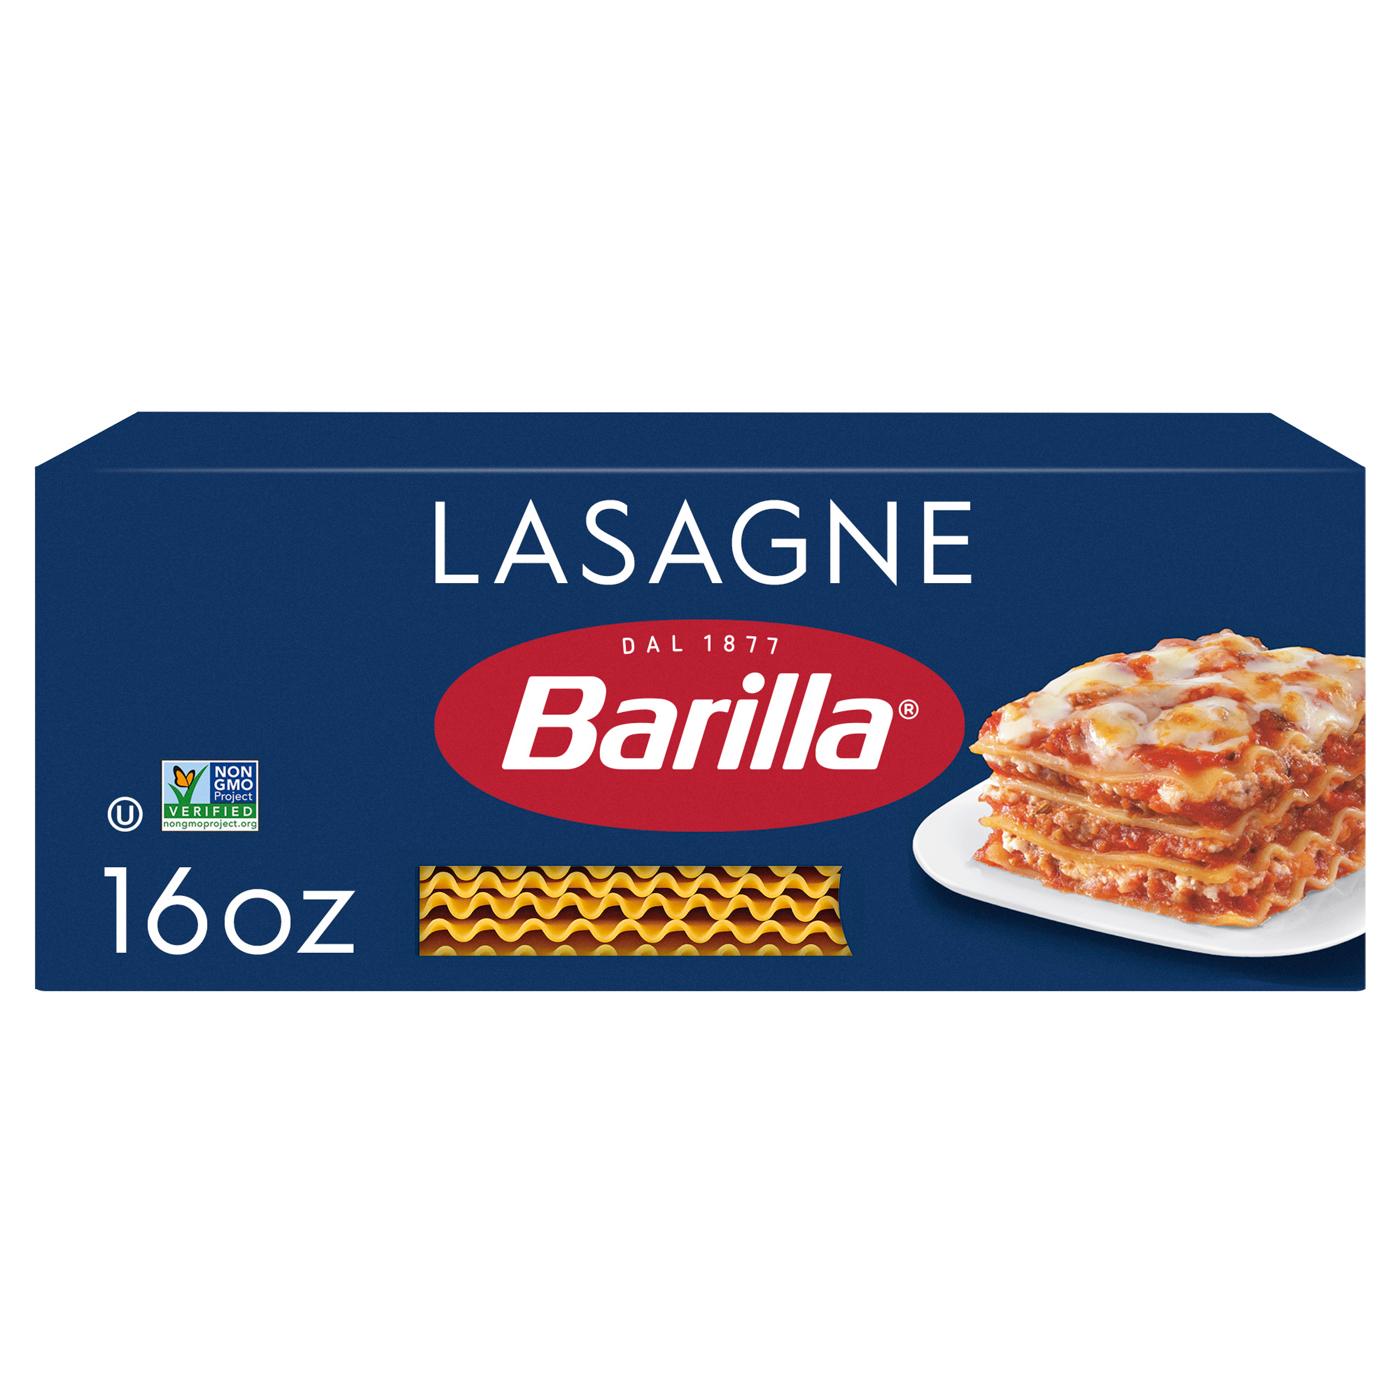 Barilla Wavy Lasagne Pasta; image 1 of 6